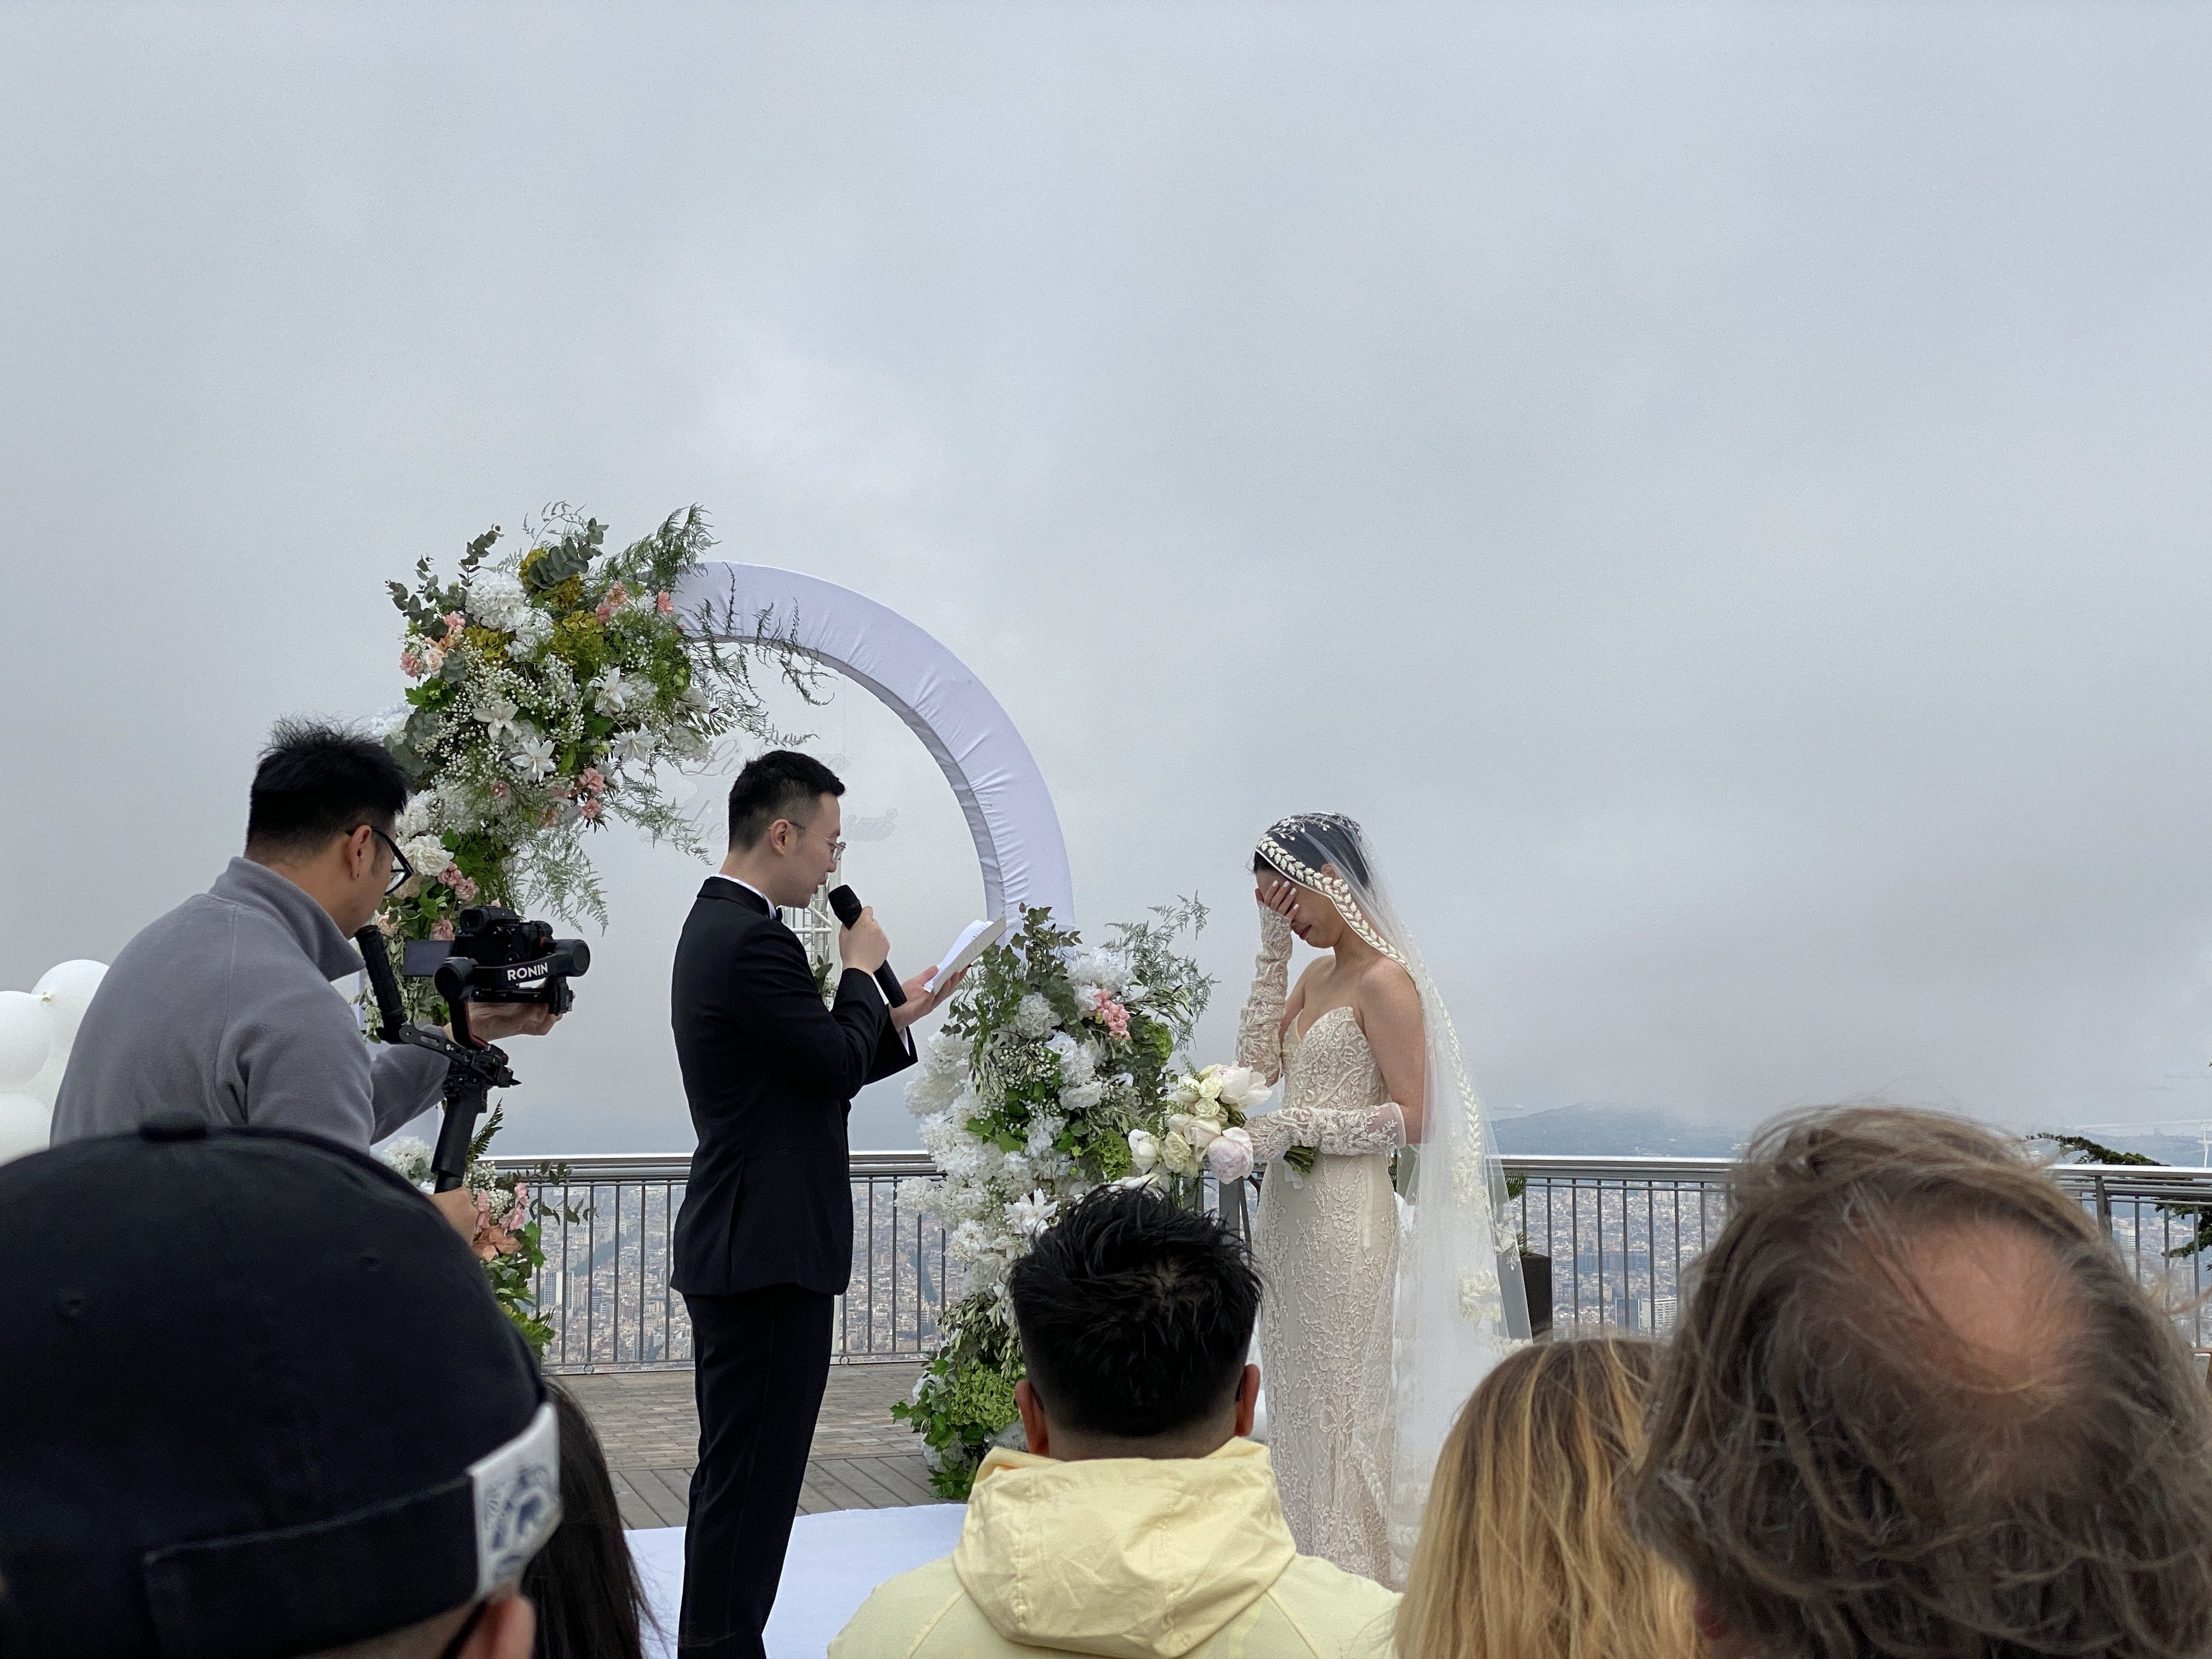 Un dels instants de la boda xinesa que ha tingut lloc al Tibidabo